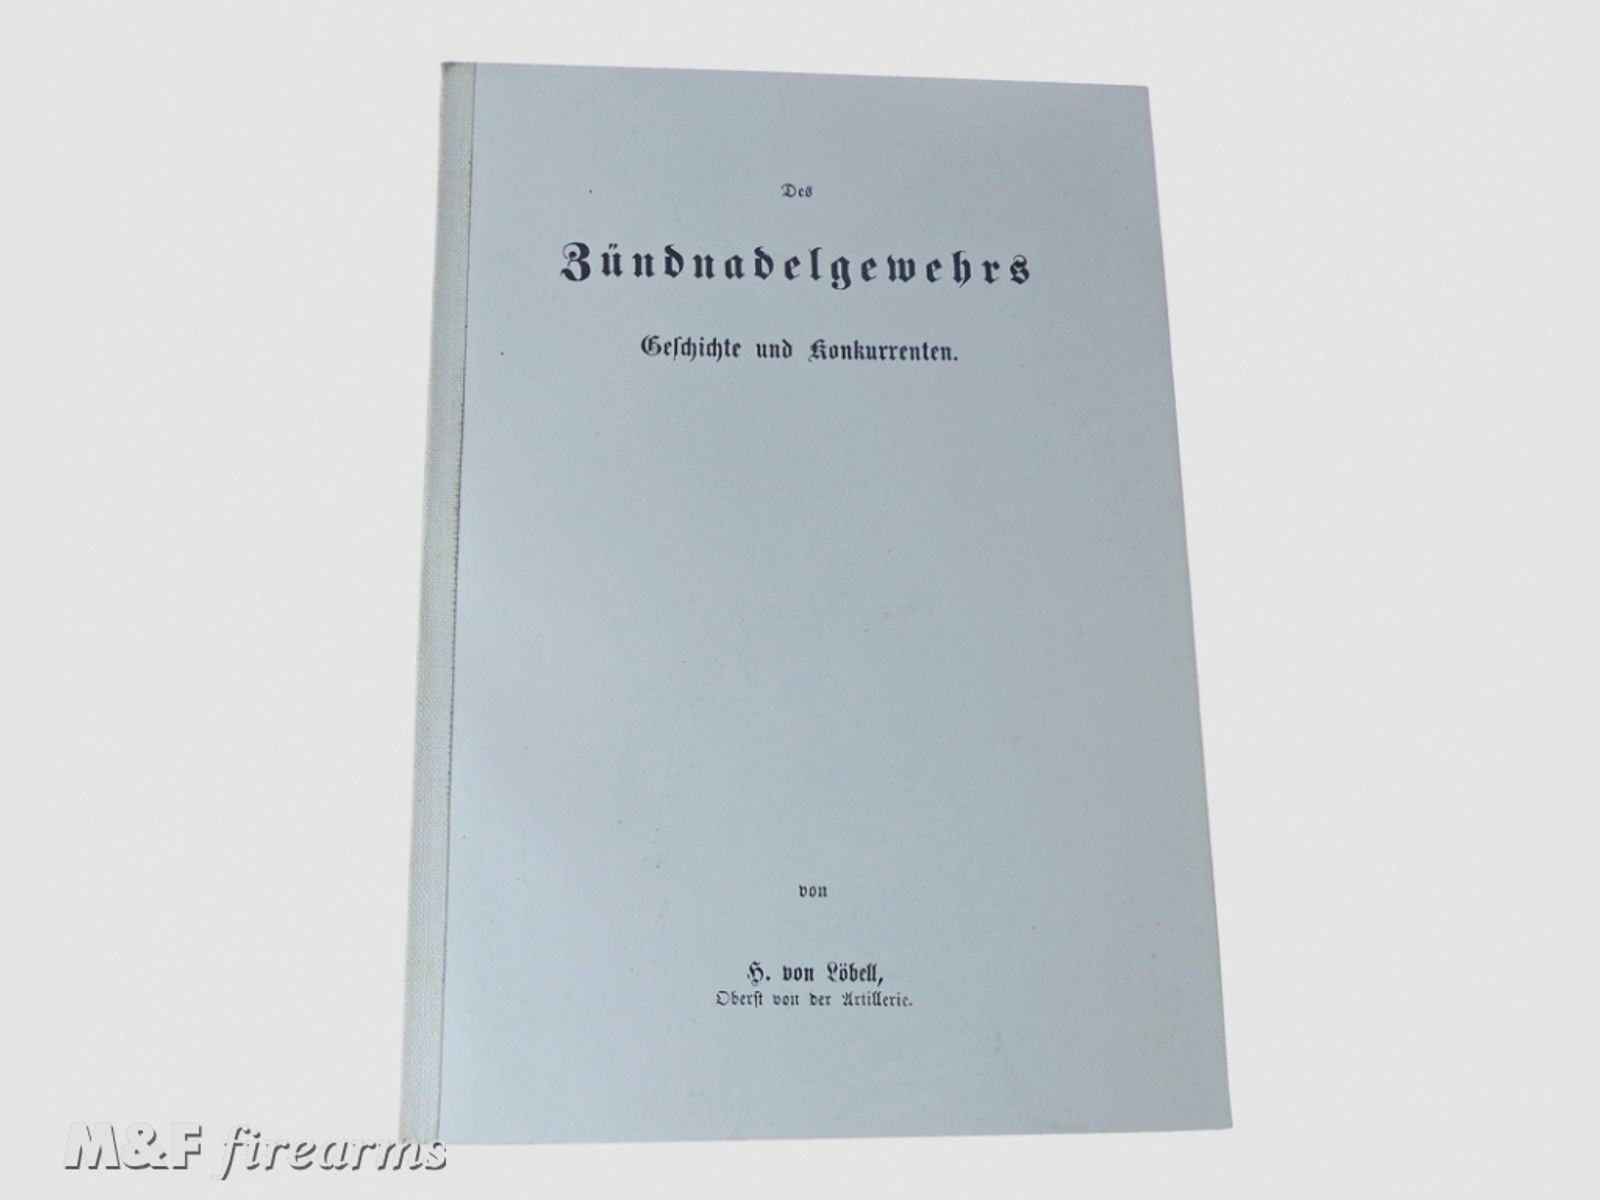 Des Zündnadelgewehrs Geschichte und Konkurrenten von H. von Löbell Oberst von der Artillerie Berlin 1967